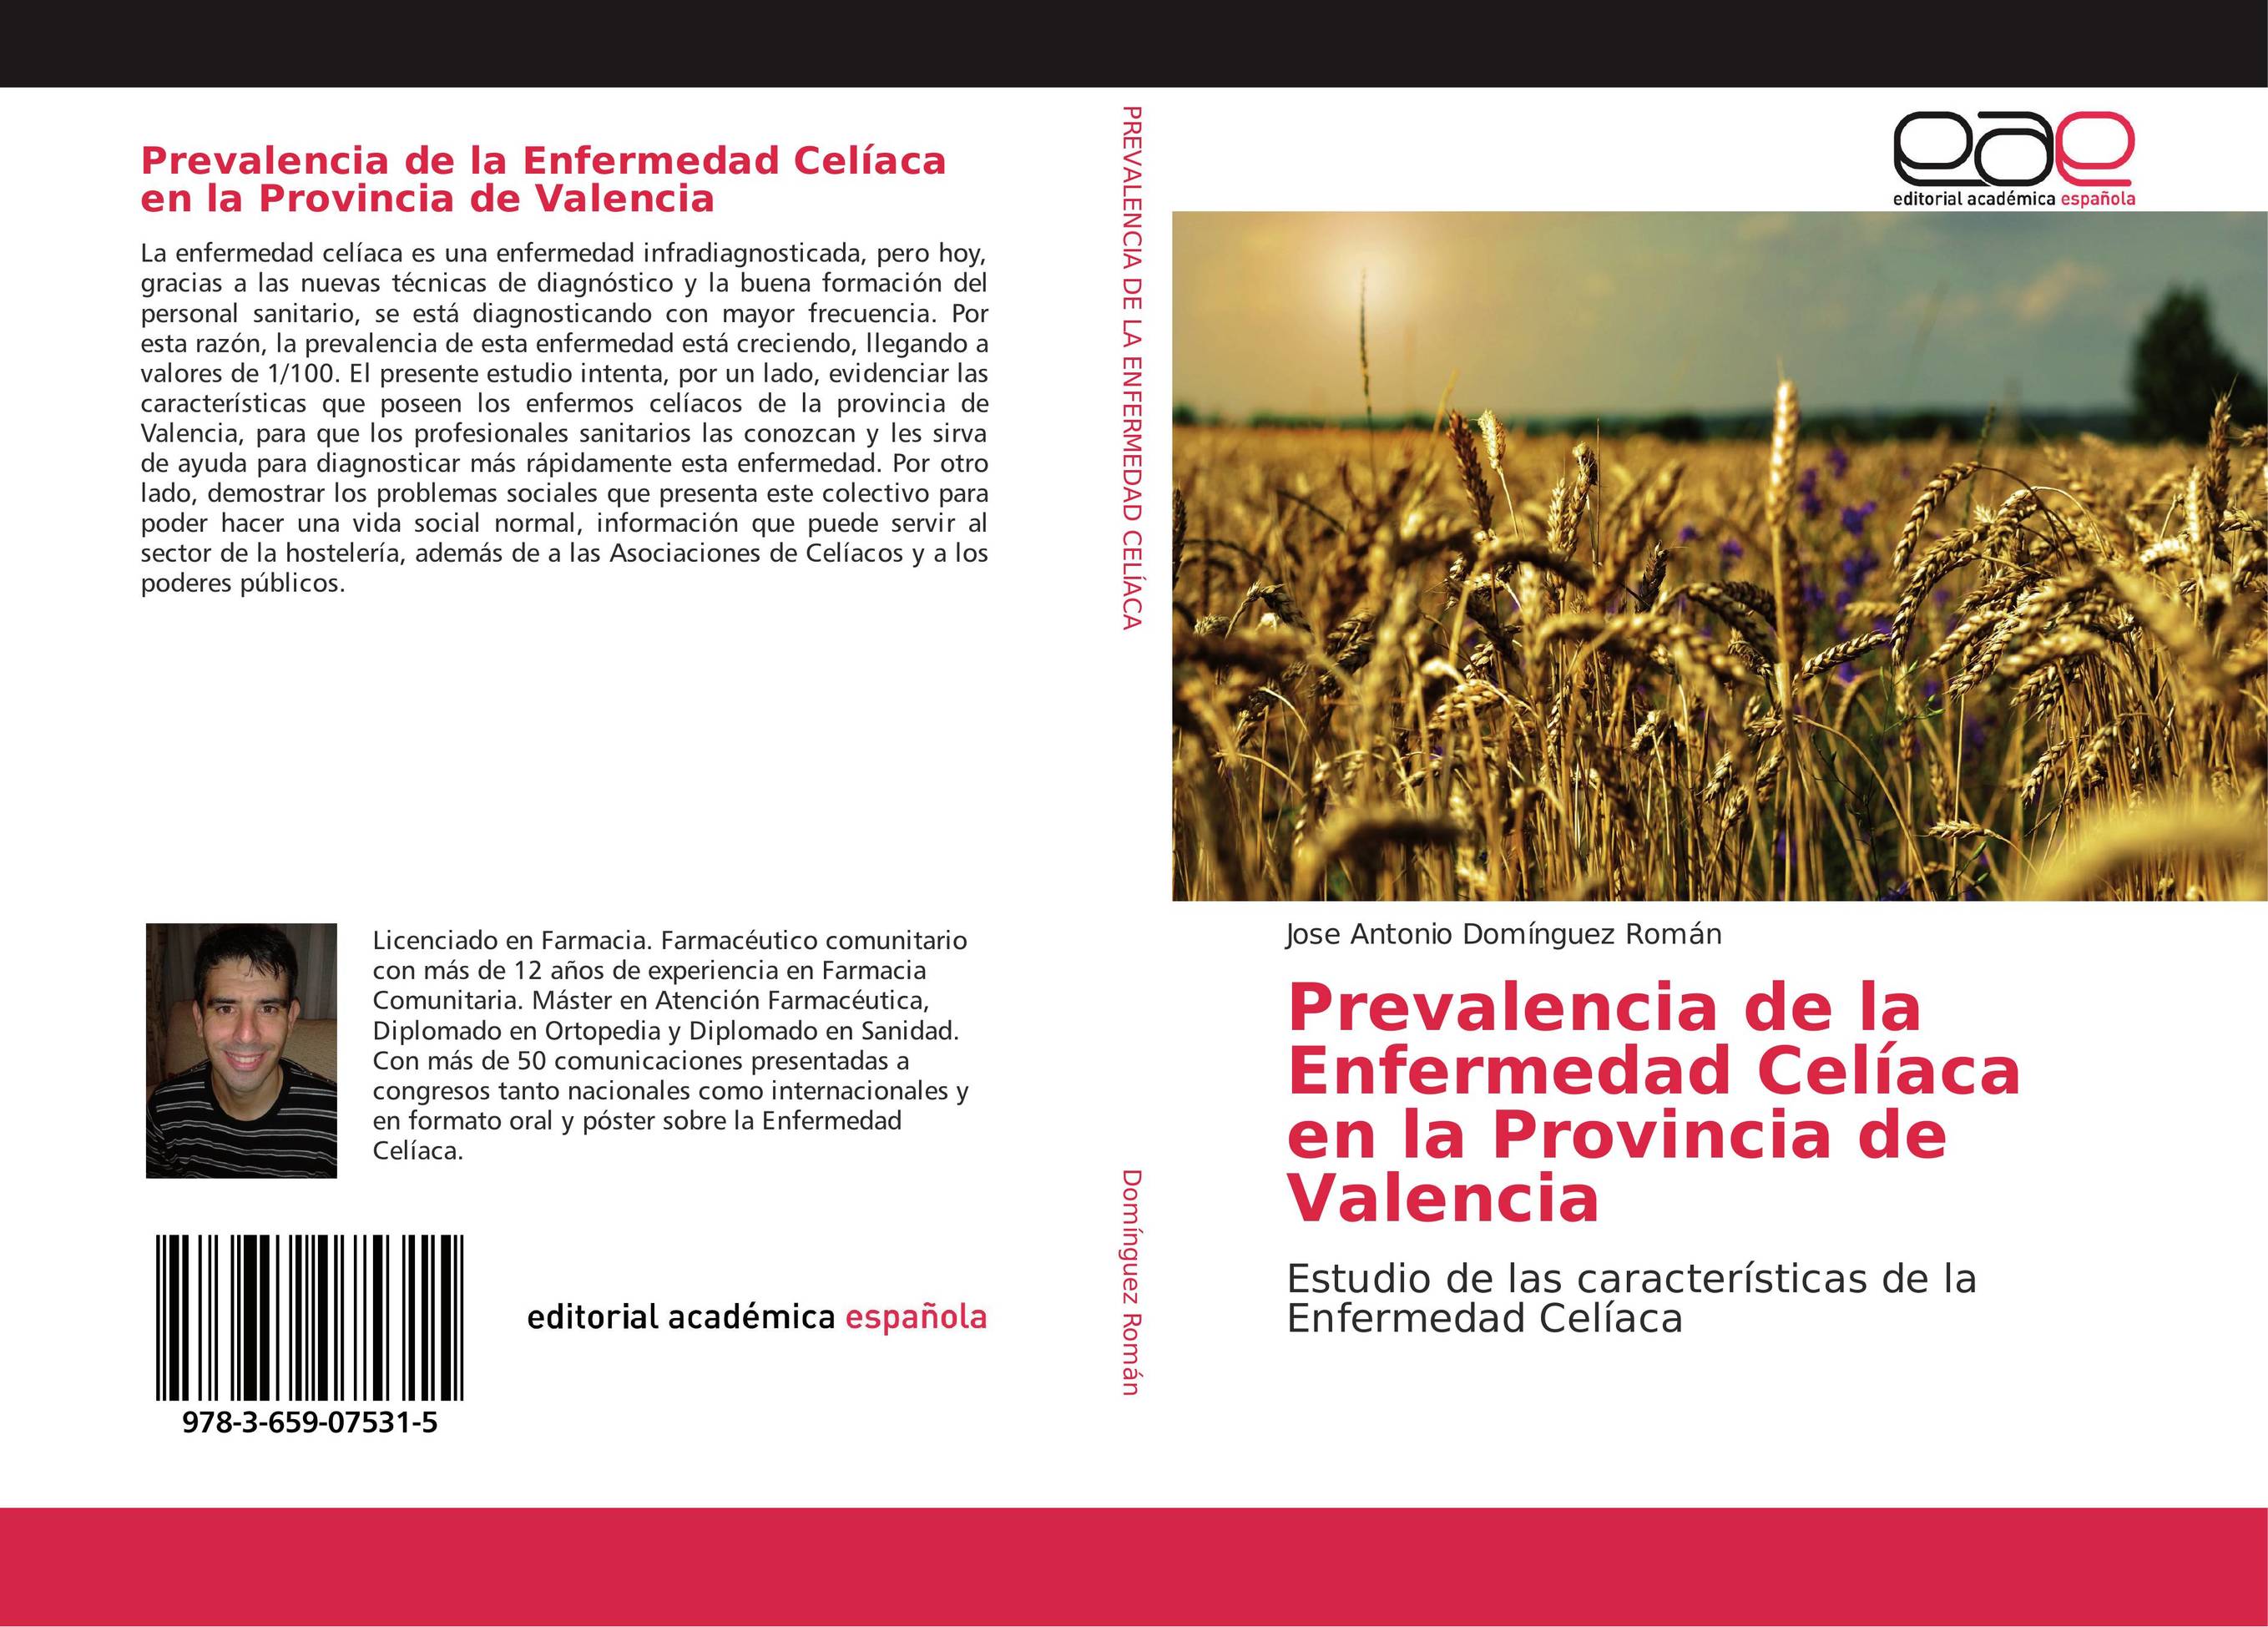 Prevalencia de la Enfermedad Celíaca en la Provincia de Valencia